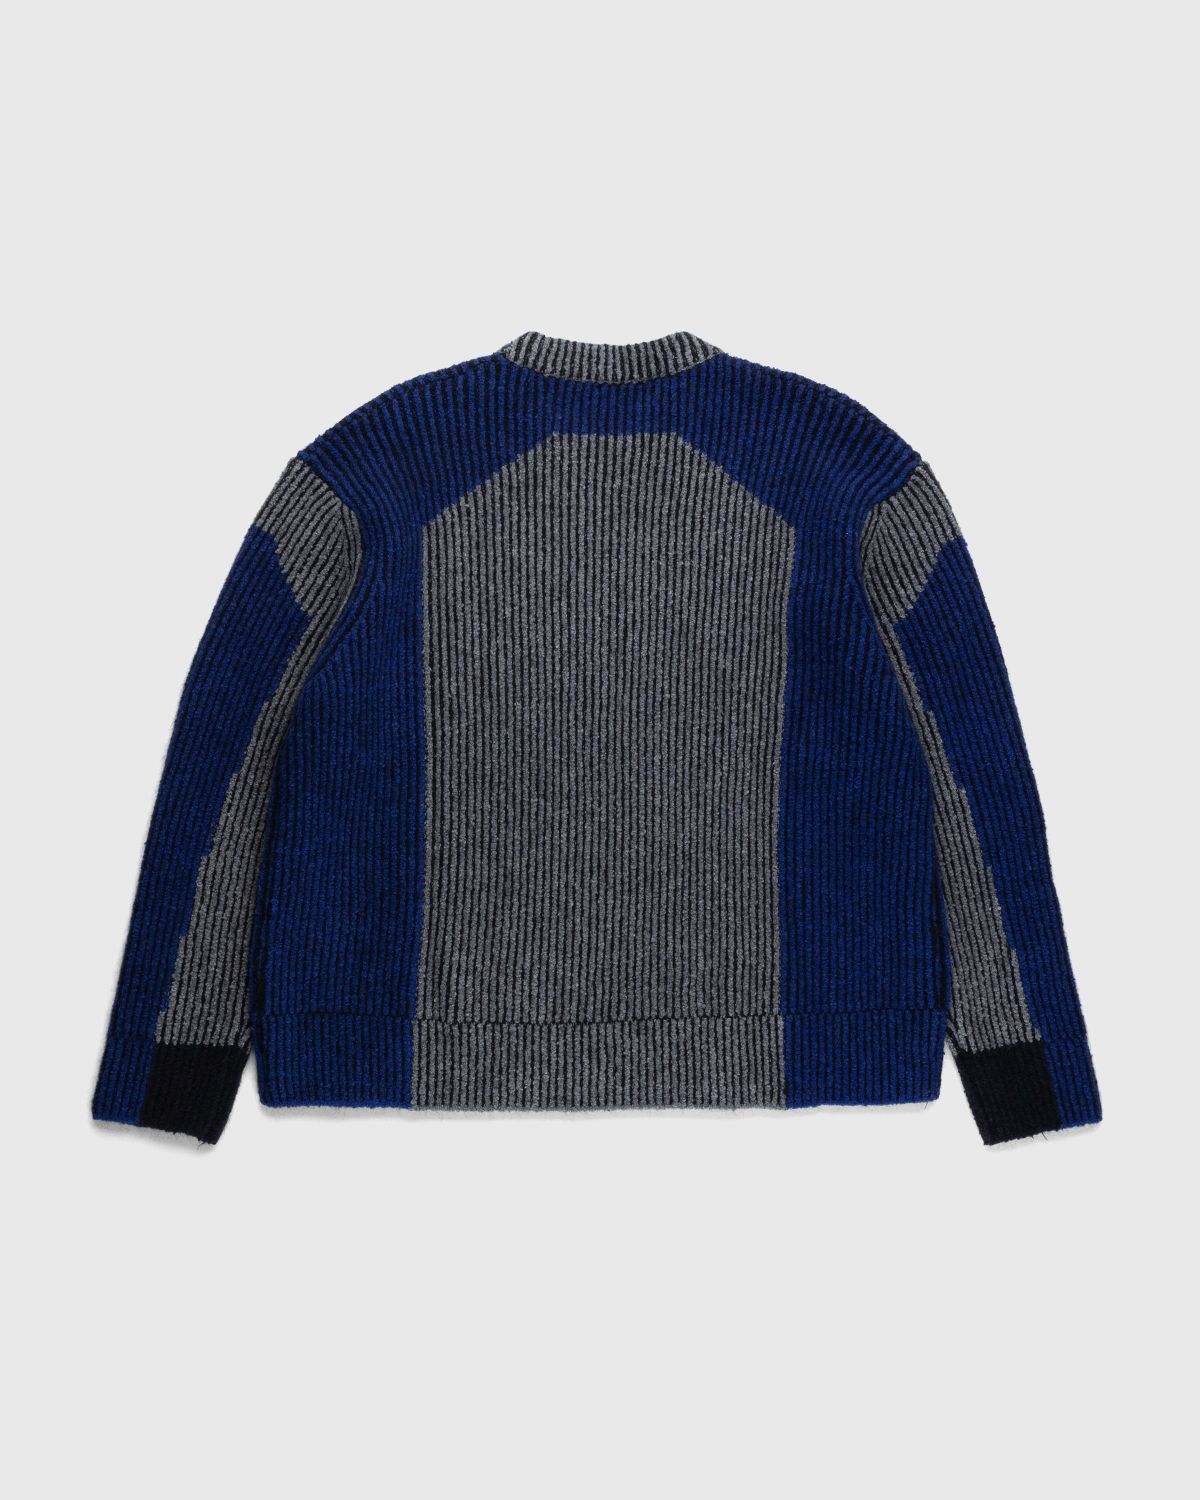 Diesel – Raig Sweater Blue - Knitwear - Blue - Image 2